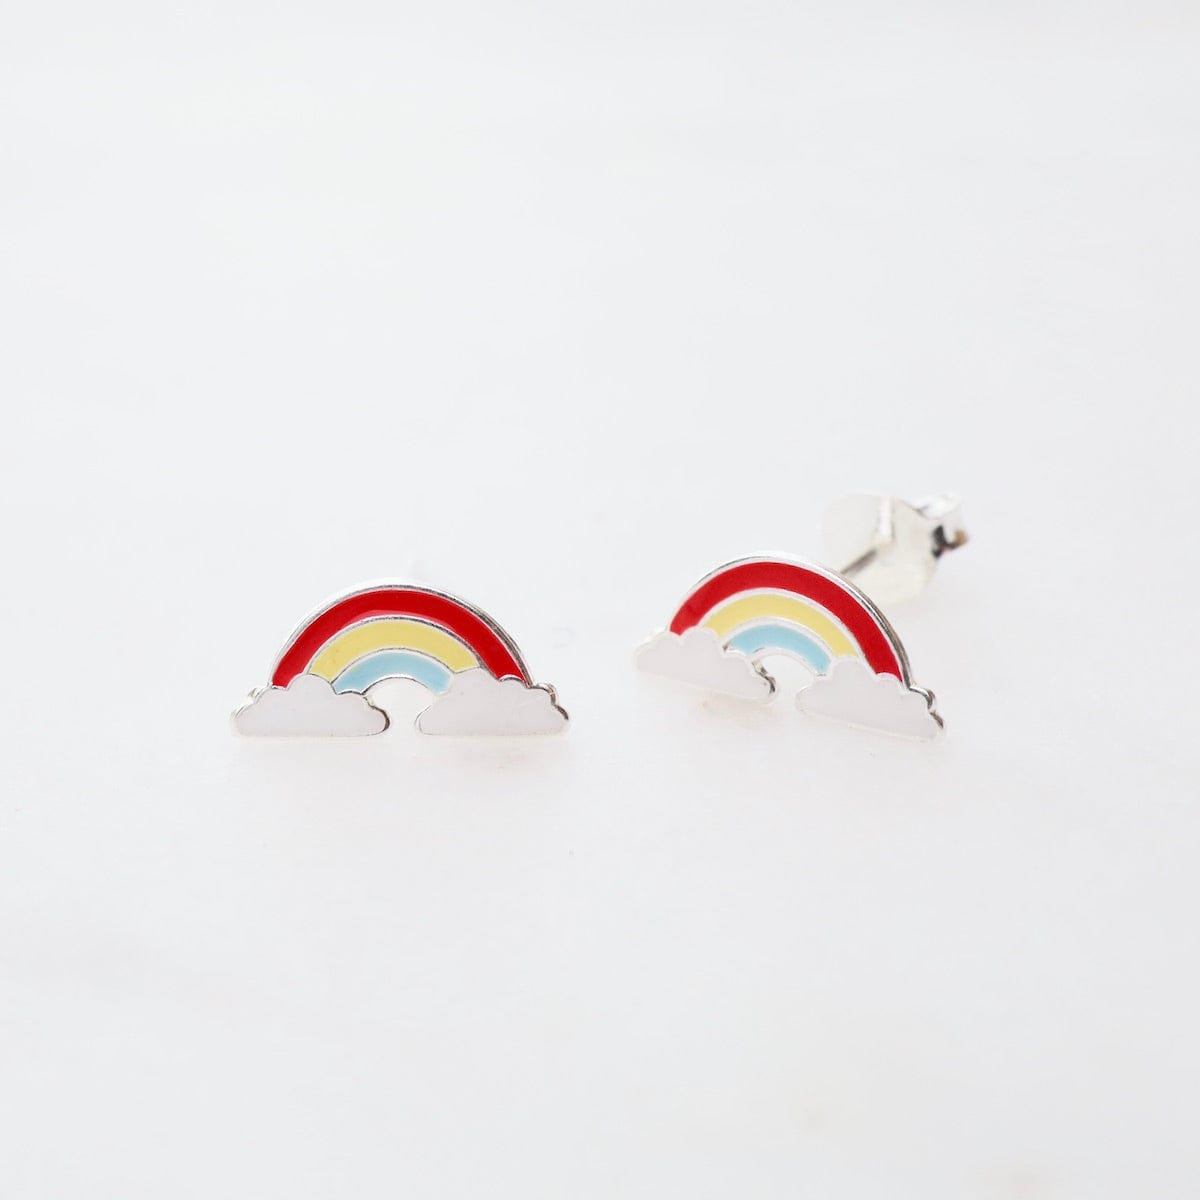 EAR Enamel Rainbow in Clouds Post Earrings - Red, Yellow, & Light Blue